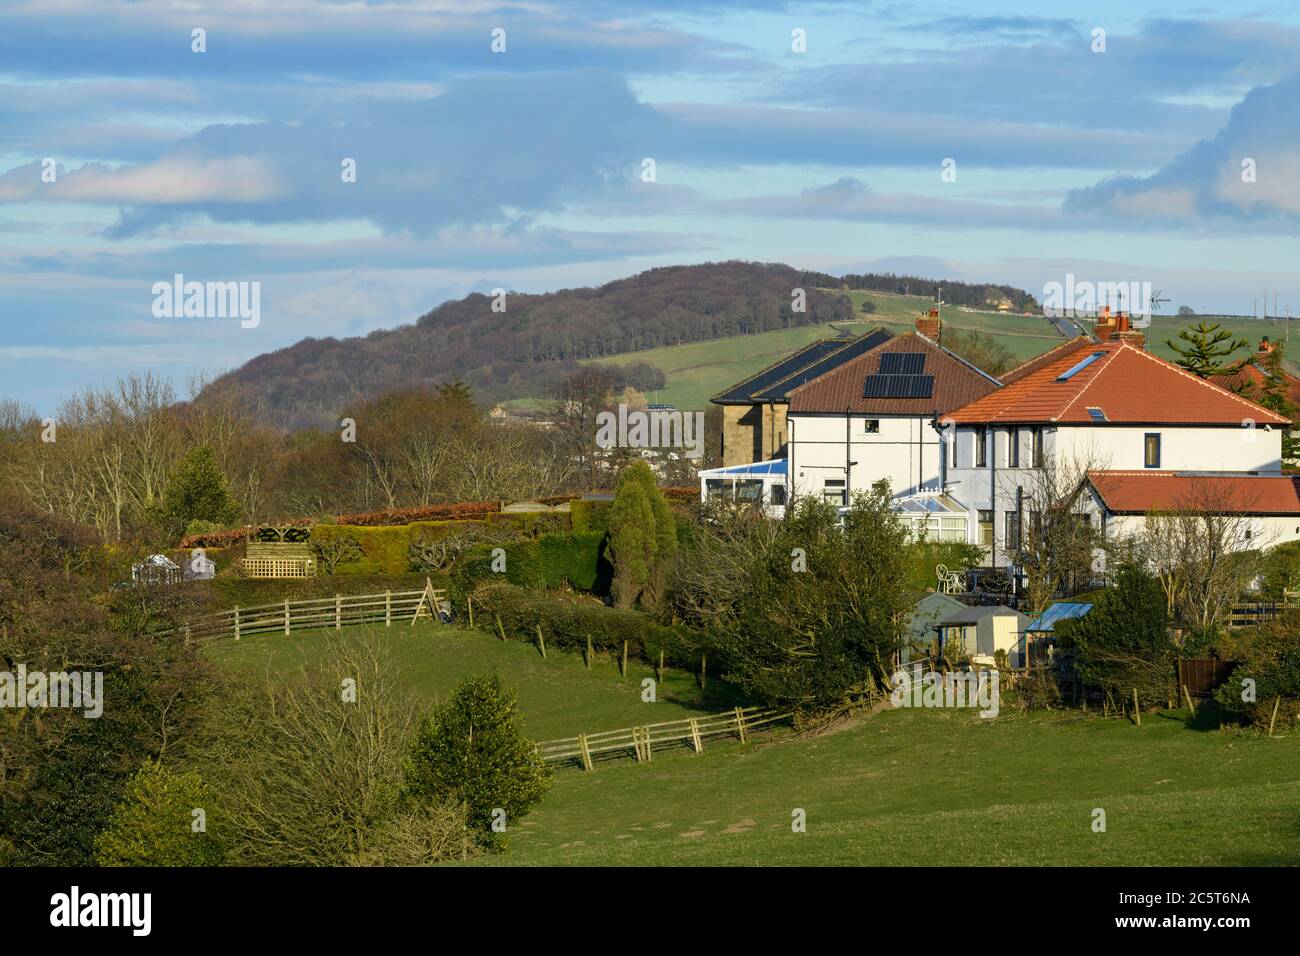 Maisons mitoyennes dans les banlieues verdoyantes pittoresques, les champs de ferme et Otley Chevin (forêt à flanc de colline) - village de Menston, West Yorkshire, Angleterre, Royaume-Uni. Banque D'Images